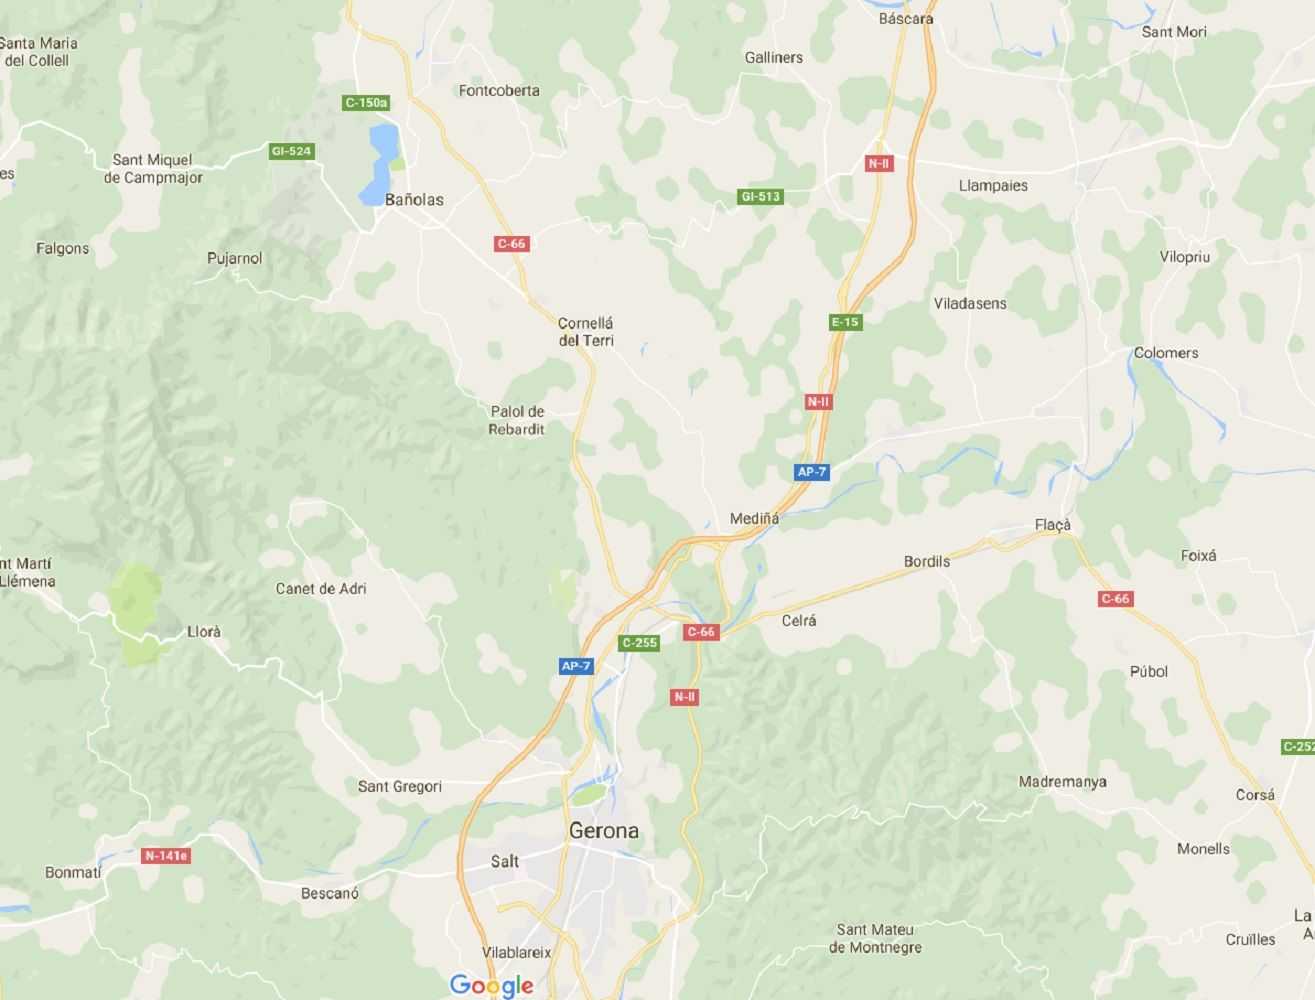 Google Maps castellanitza els topònims catalans